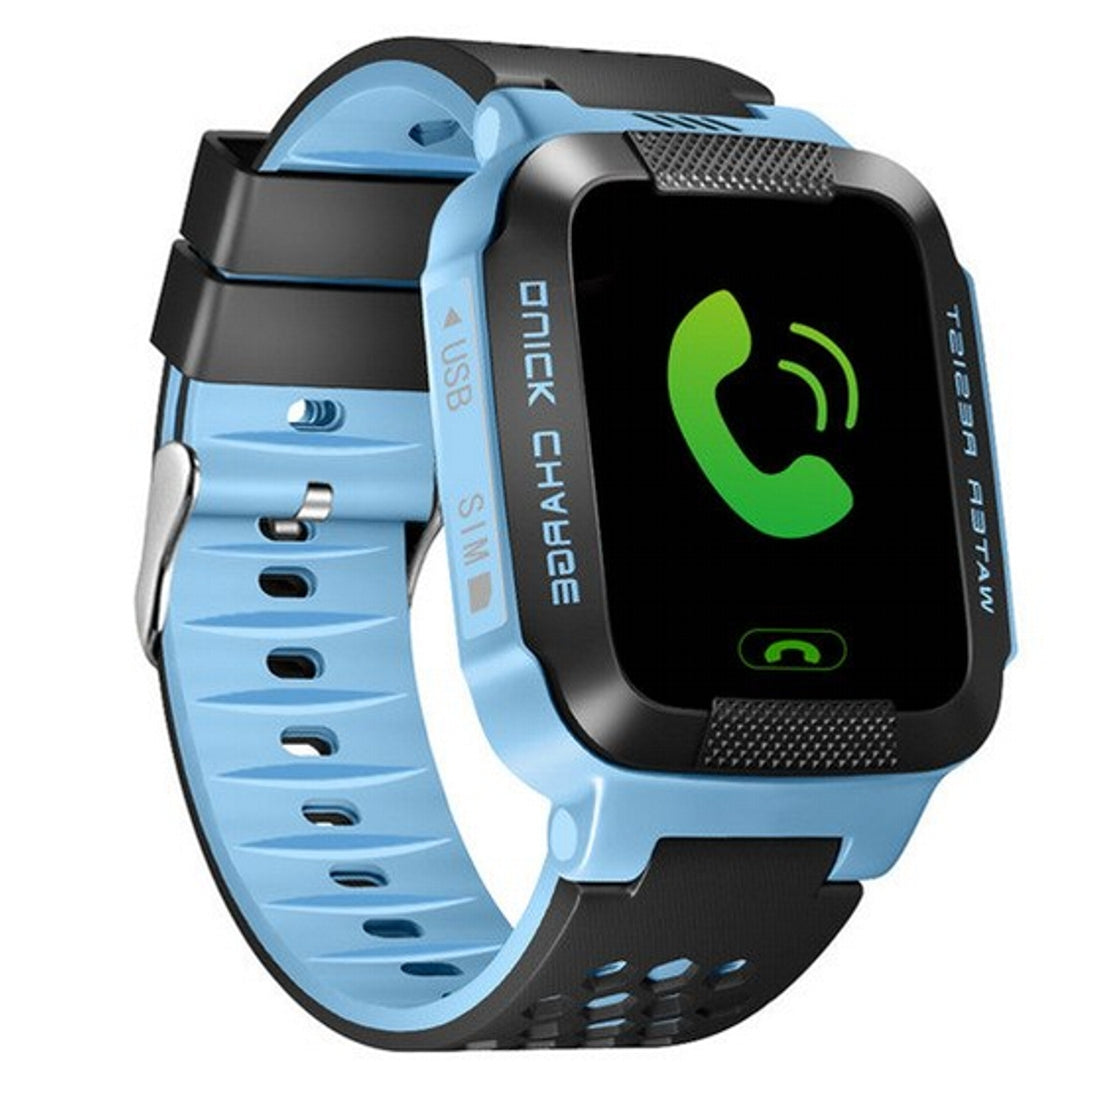 At give tilladelse Vanding absurd GPS Kids Smart Watch Tracker SIM-kort - Come4Buy eShop